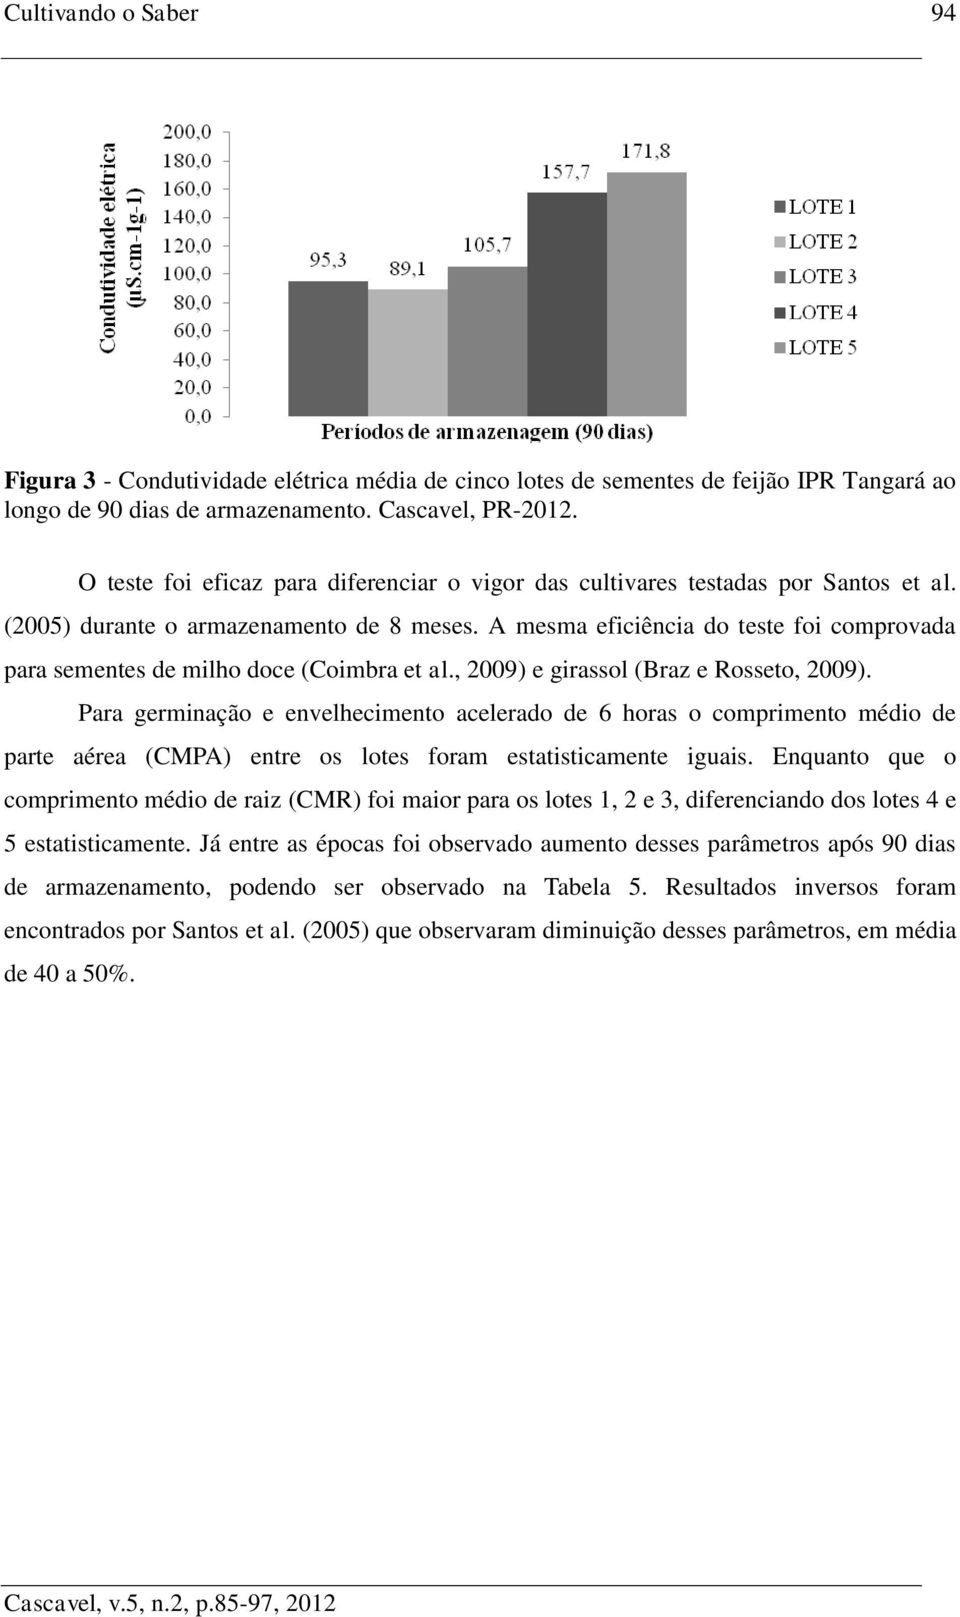 A mesma eficiência do teste foi comprovada para sementes de milho doce (Coimbra et al., 2009) e girassol (Braz e Rosseto, 2009).